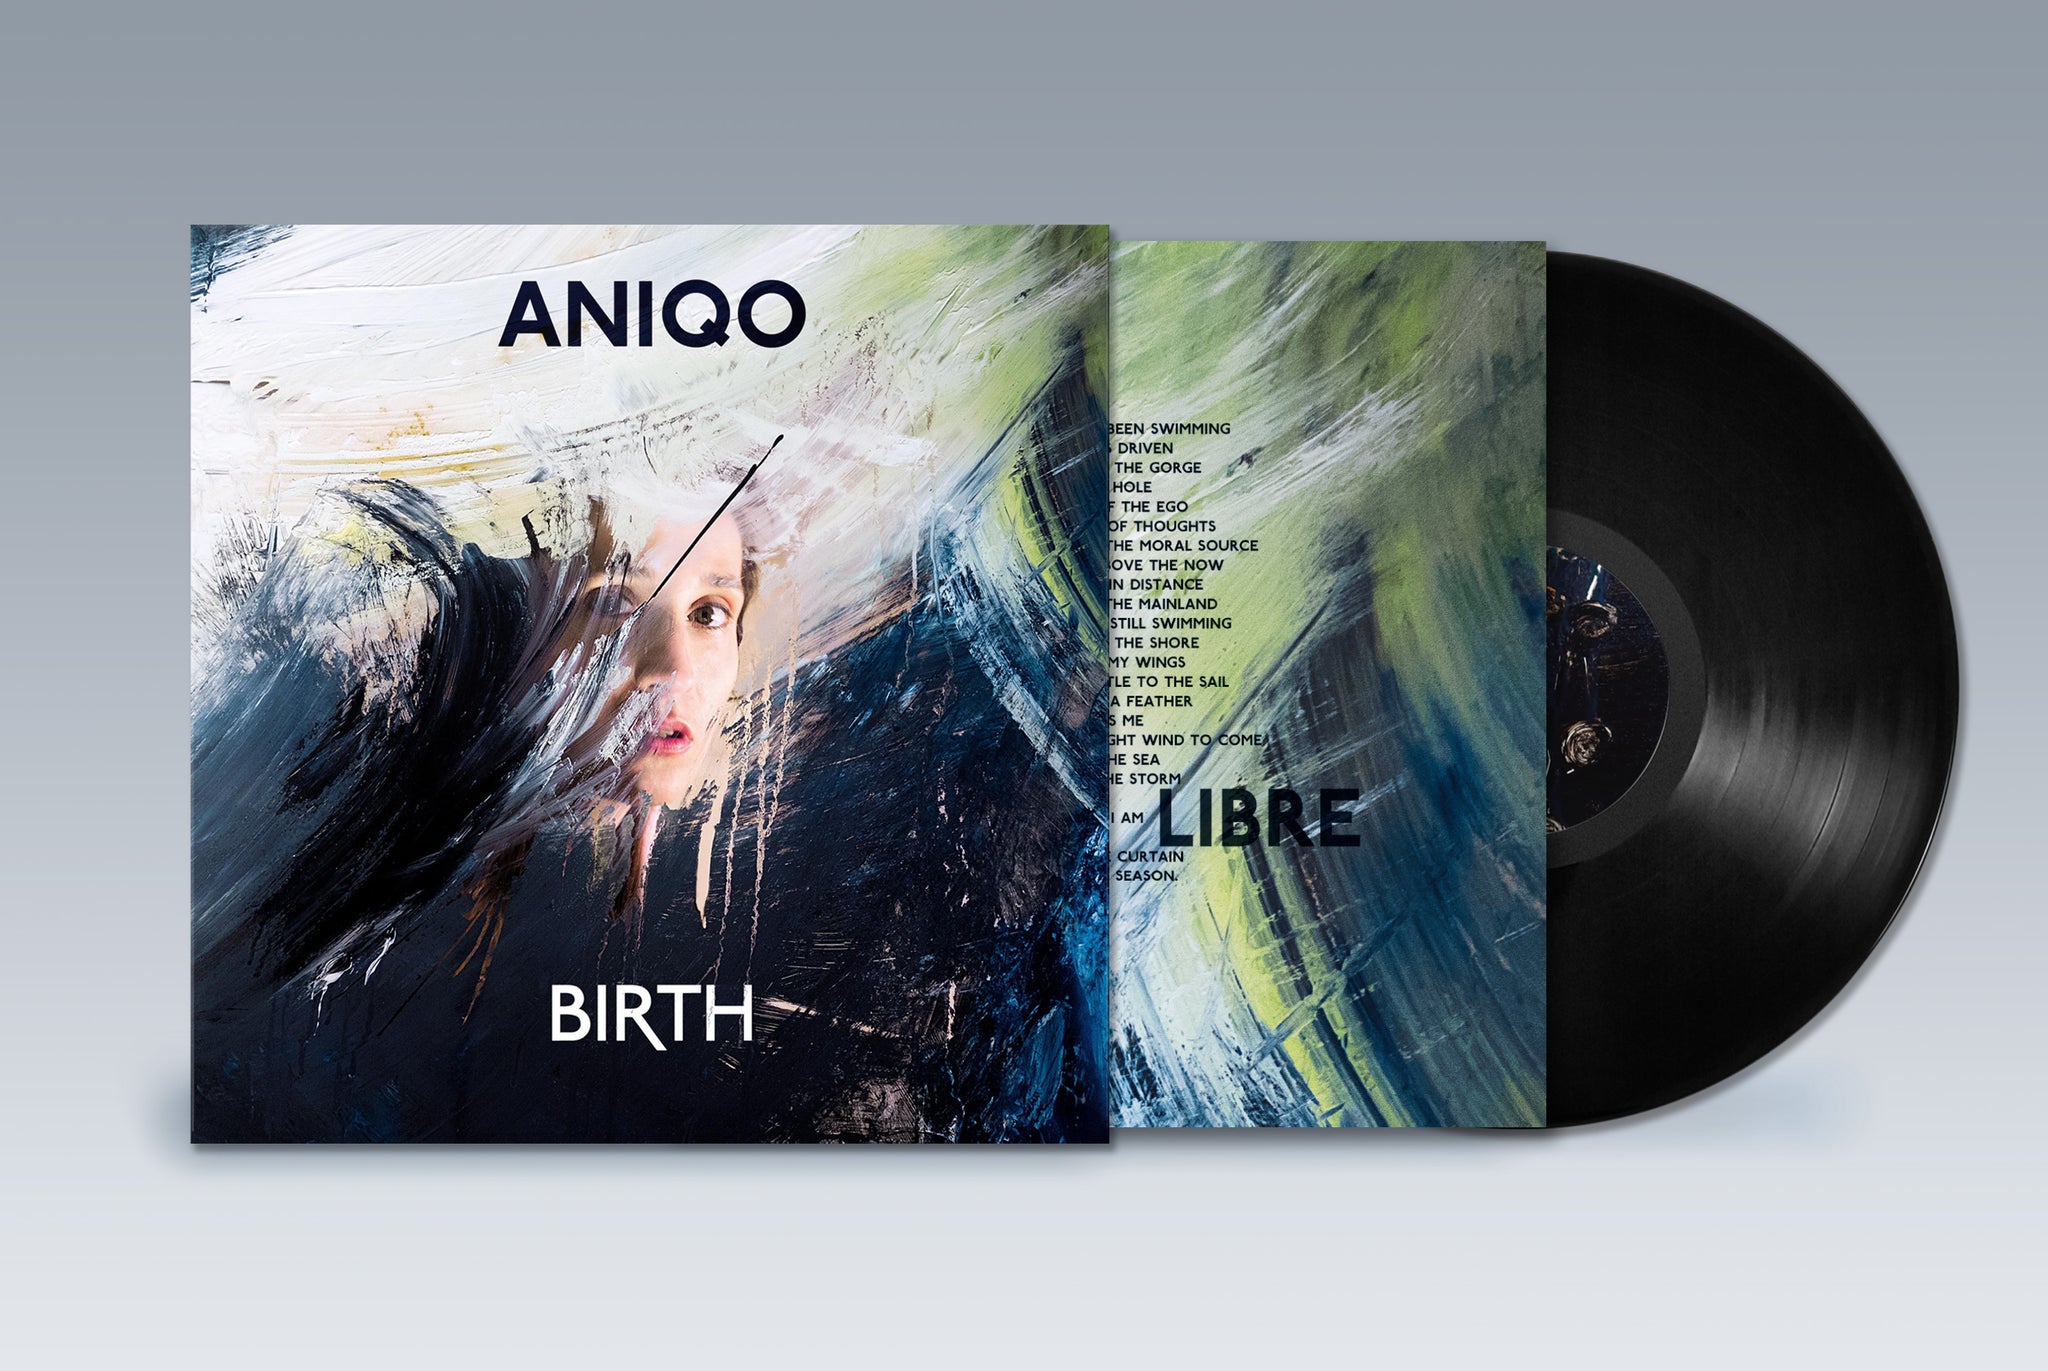 ANIQO - Birth (CD / Vinyl 180g)